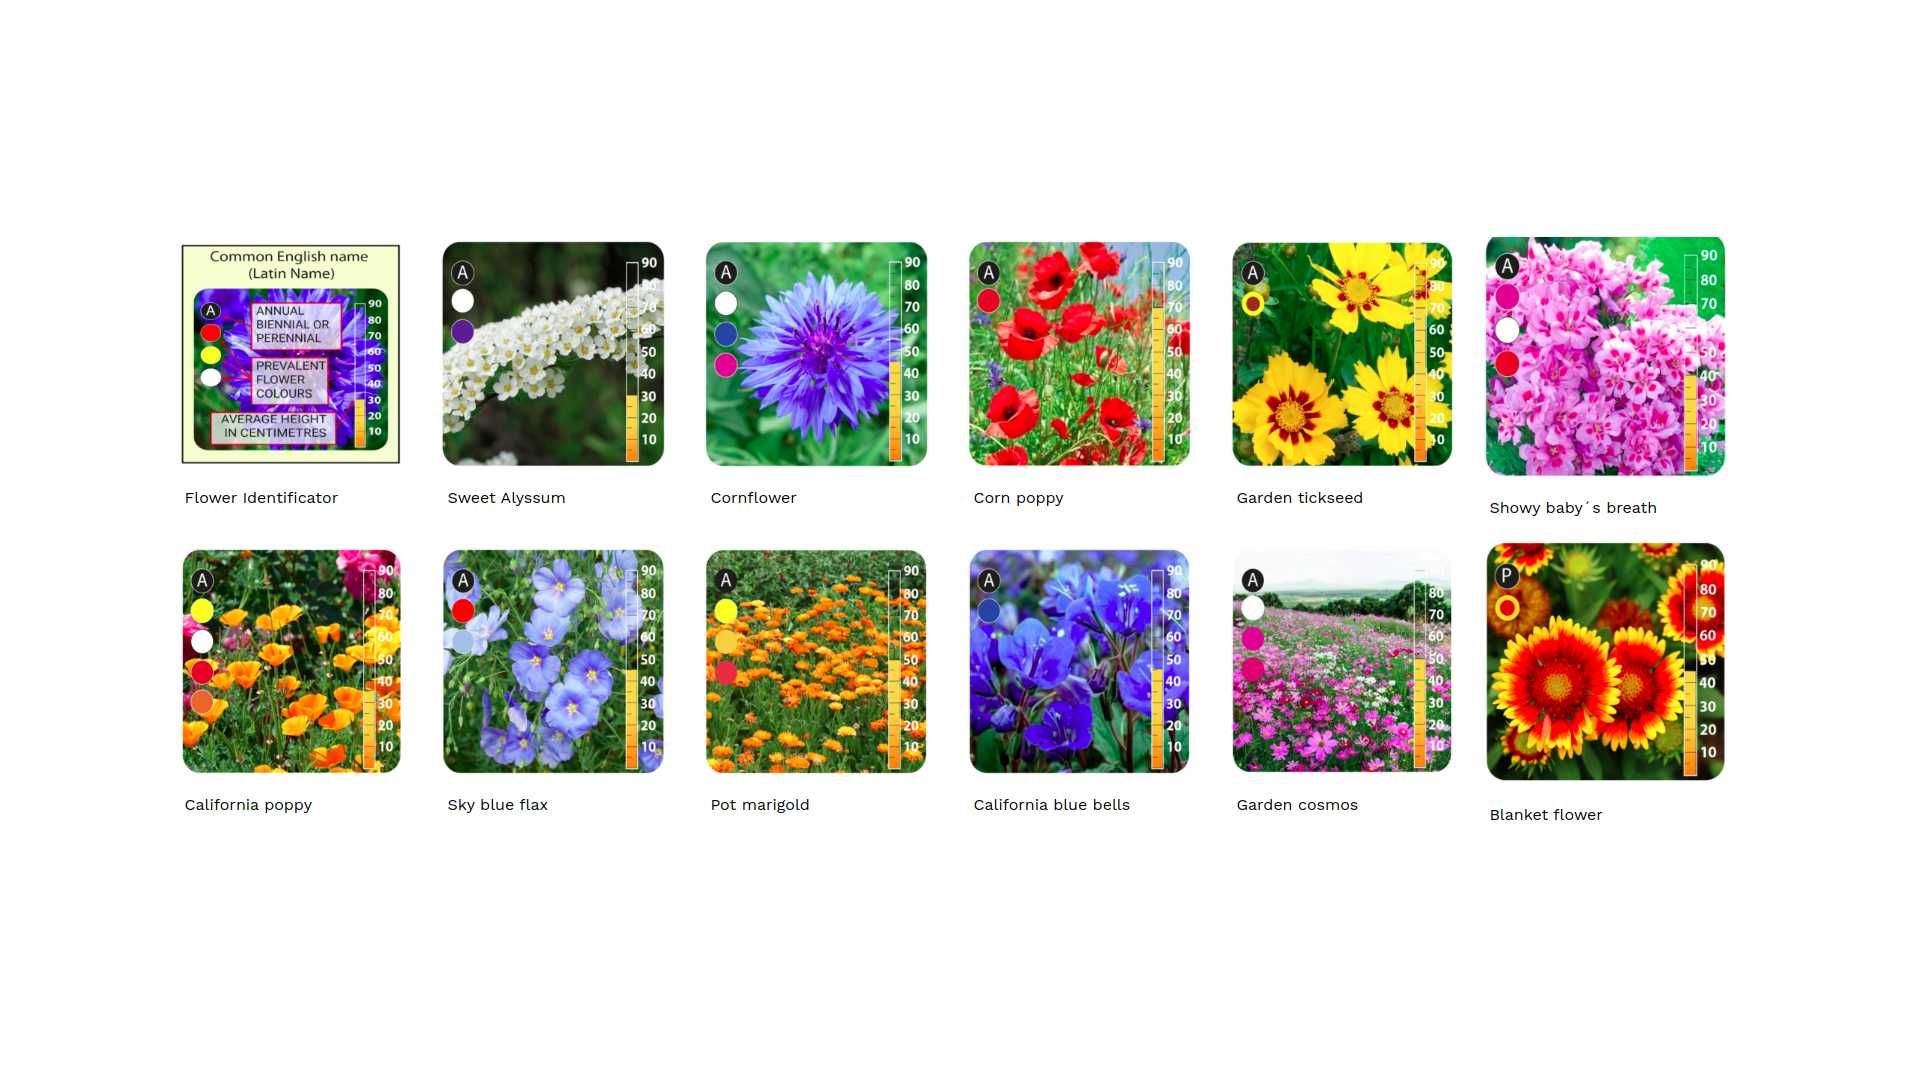 Kwiaty Polne Jednoroczne |Mata biodegradowalna | Łąki kwietne